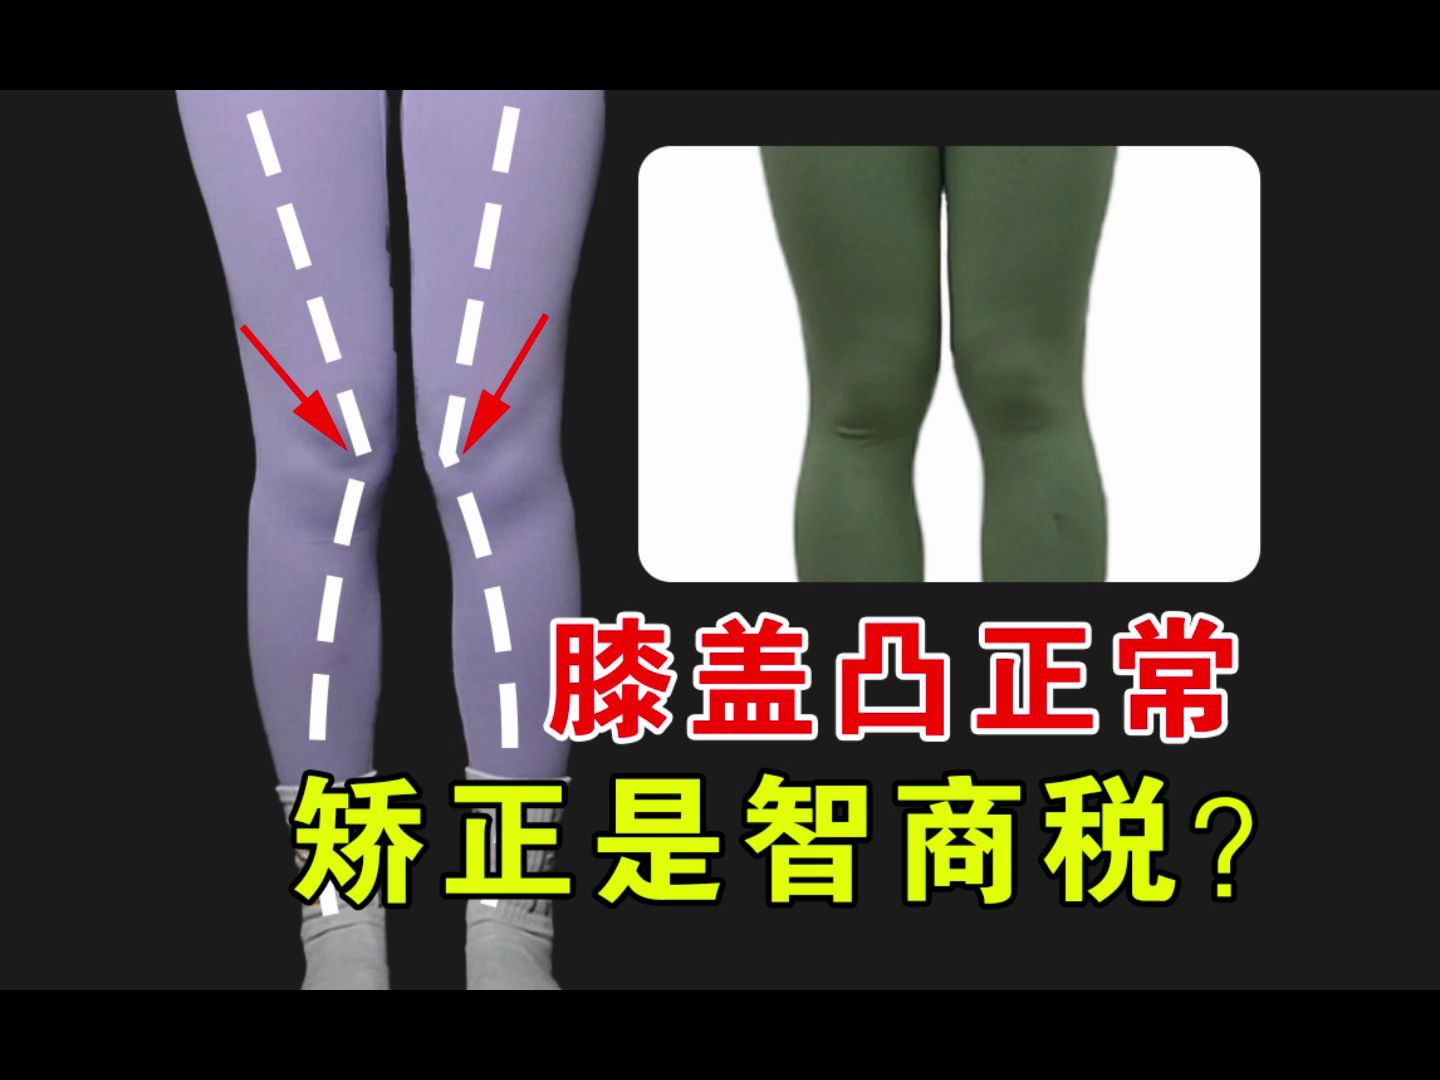 膝盖内侧凸，是制造焦虑还是体态问题？说骨头=腿型的，别忘了腿上还有肌肉、筋膜、脂肪等！